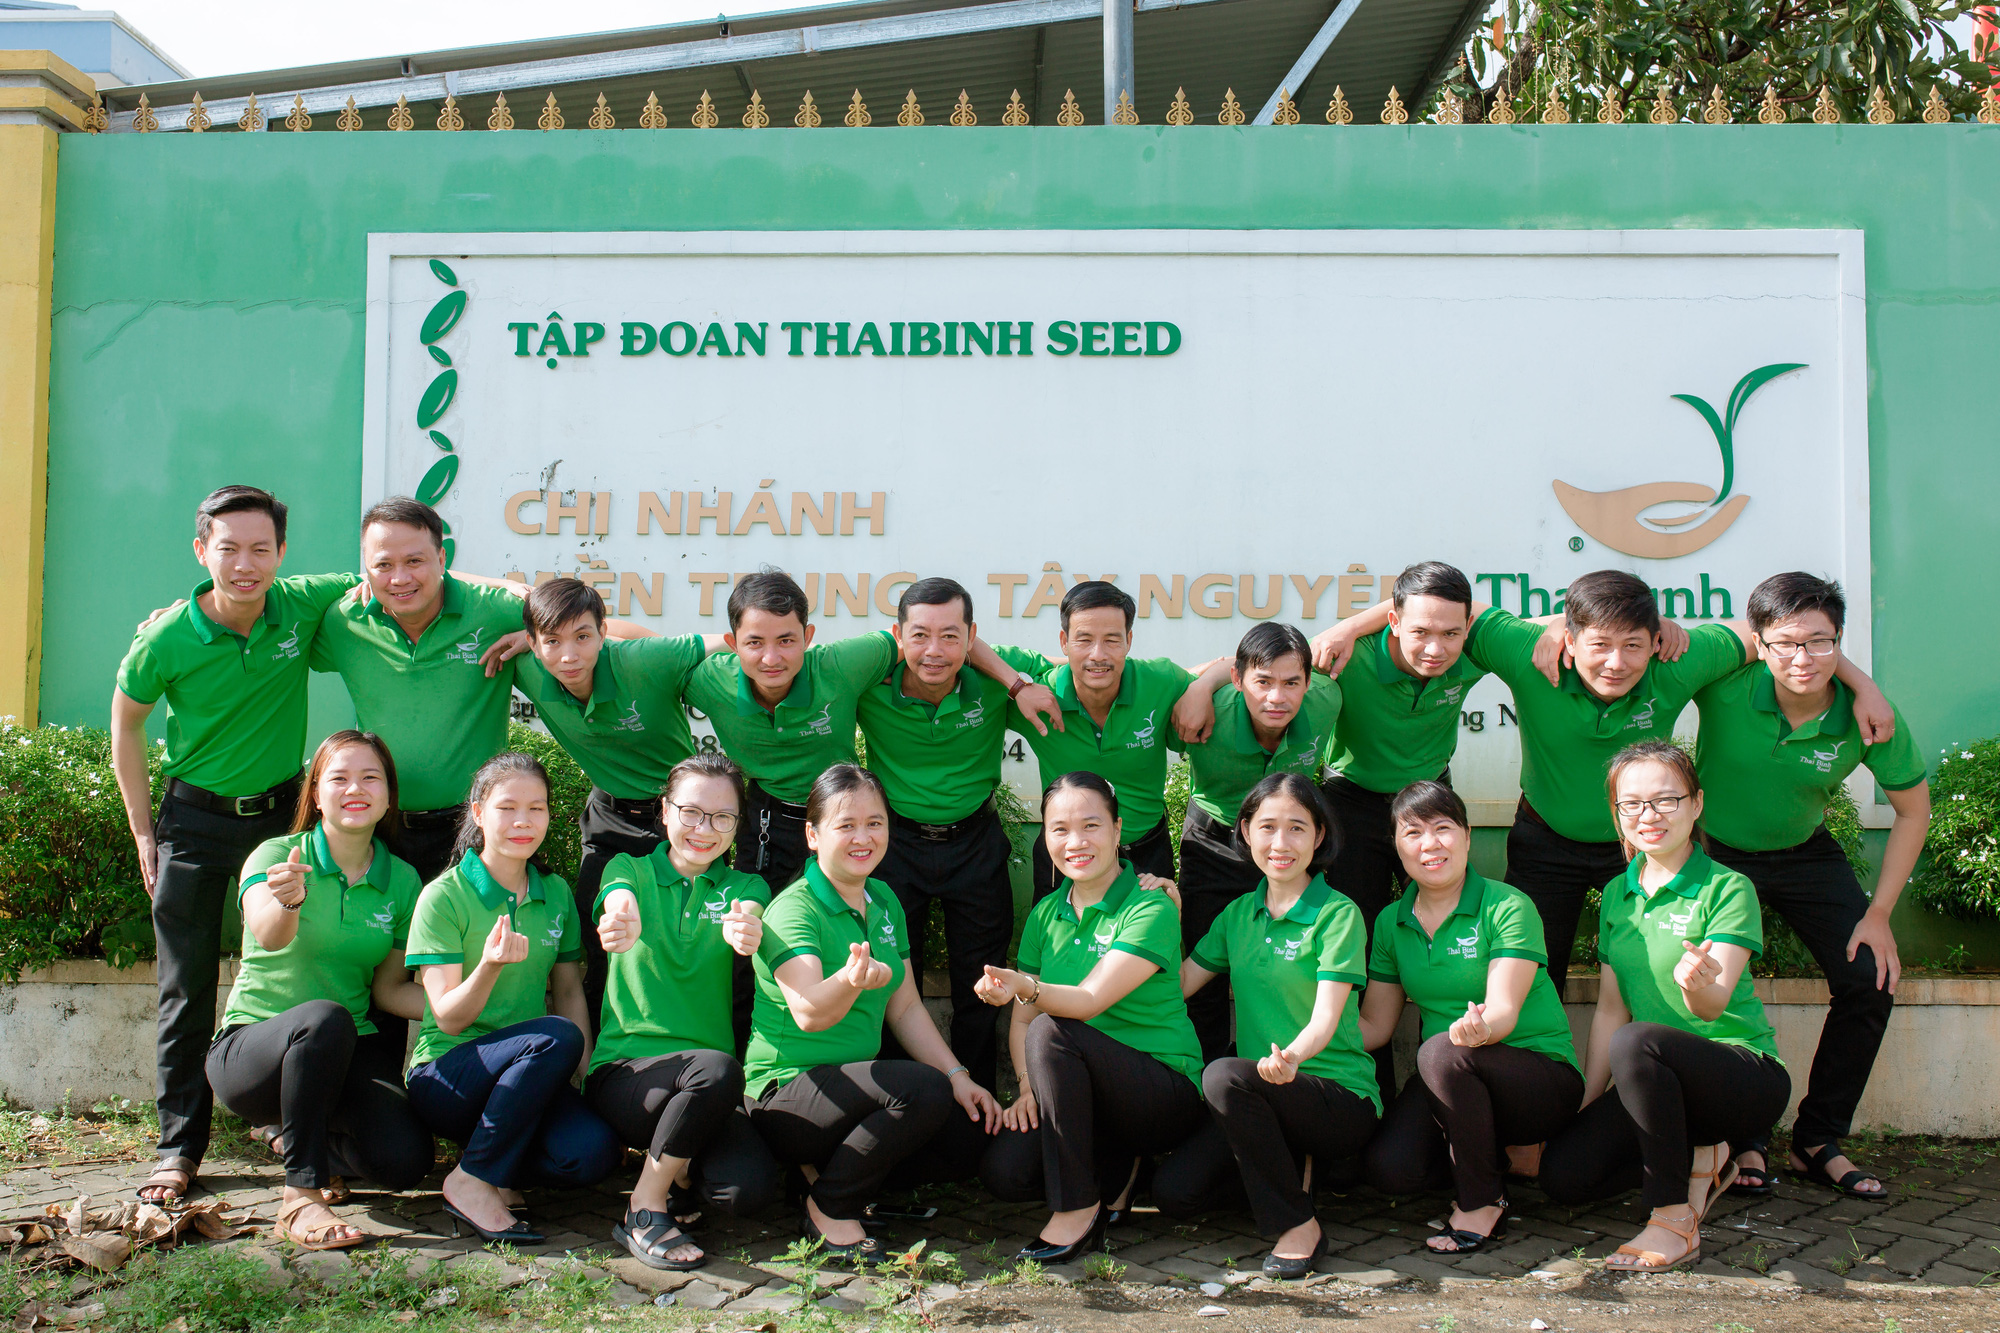 ThaiBinh Seed Miền Trung - Tây Nguyên: 15 năm sát cánh cùng nông dân cho những vụ mùa bội thu - Ảnh 6.